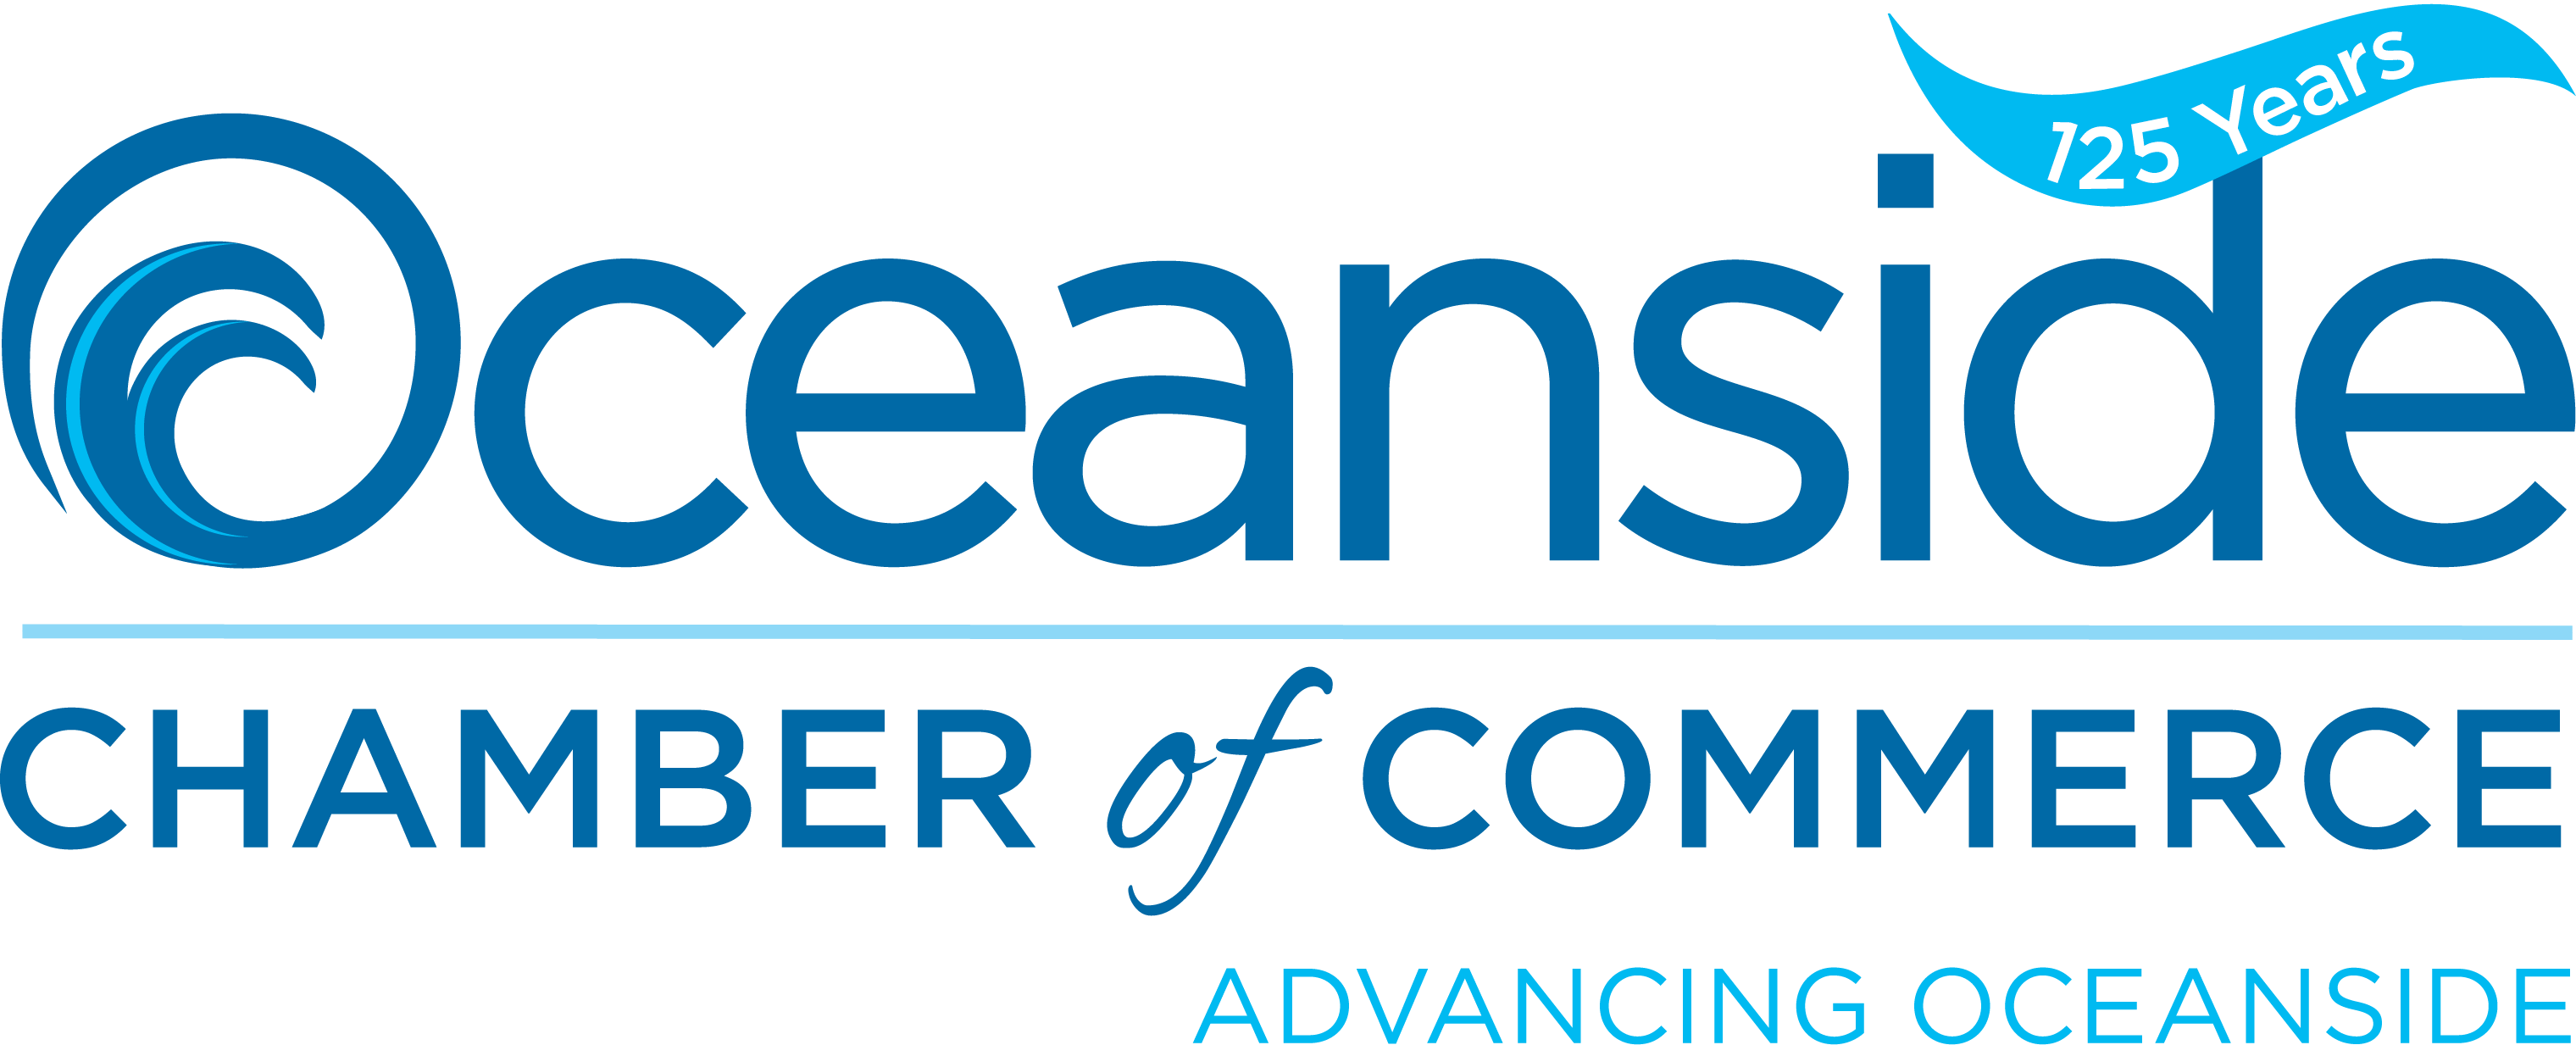 Oceanside Chamber logo.png